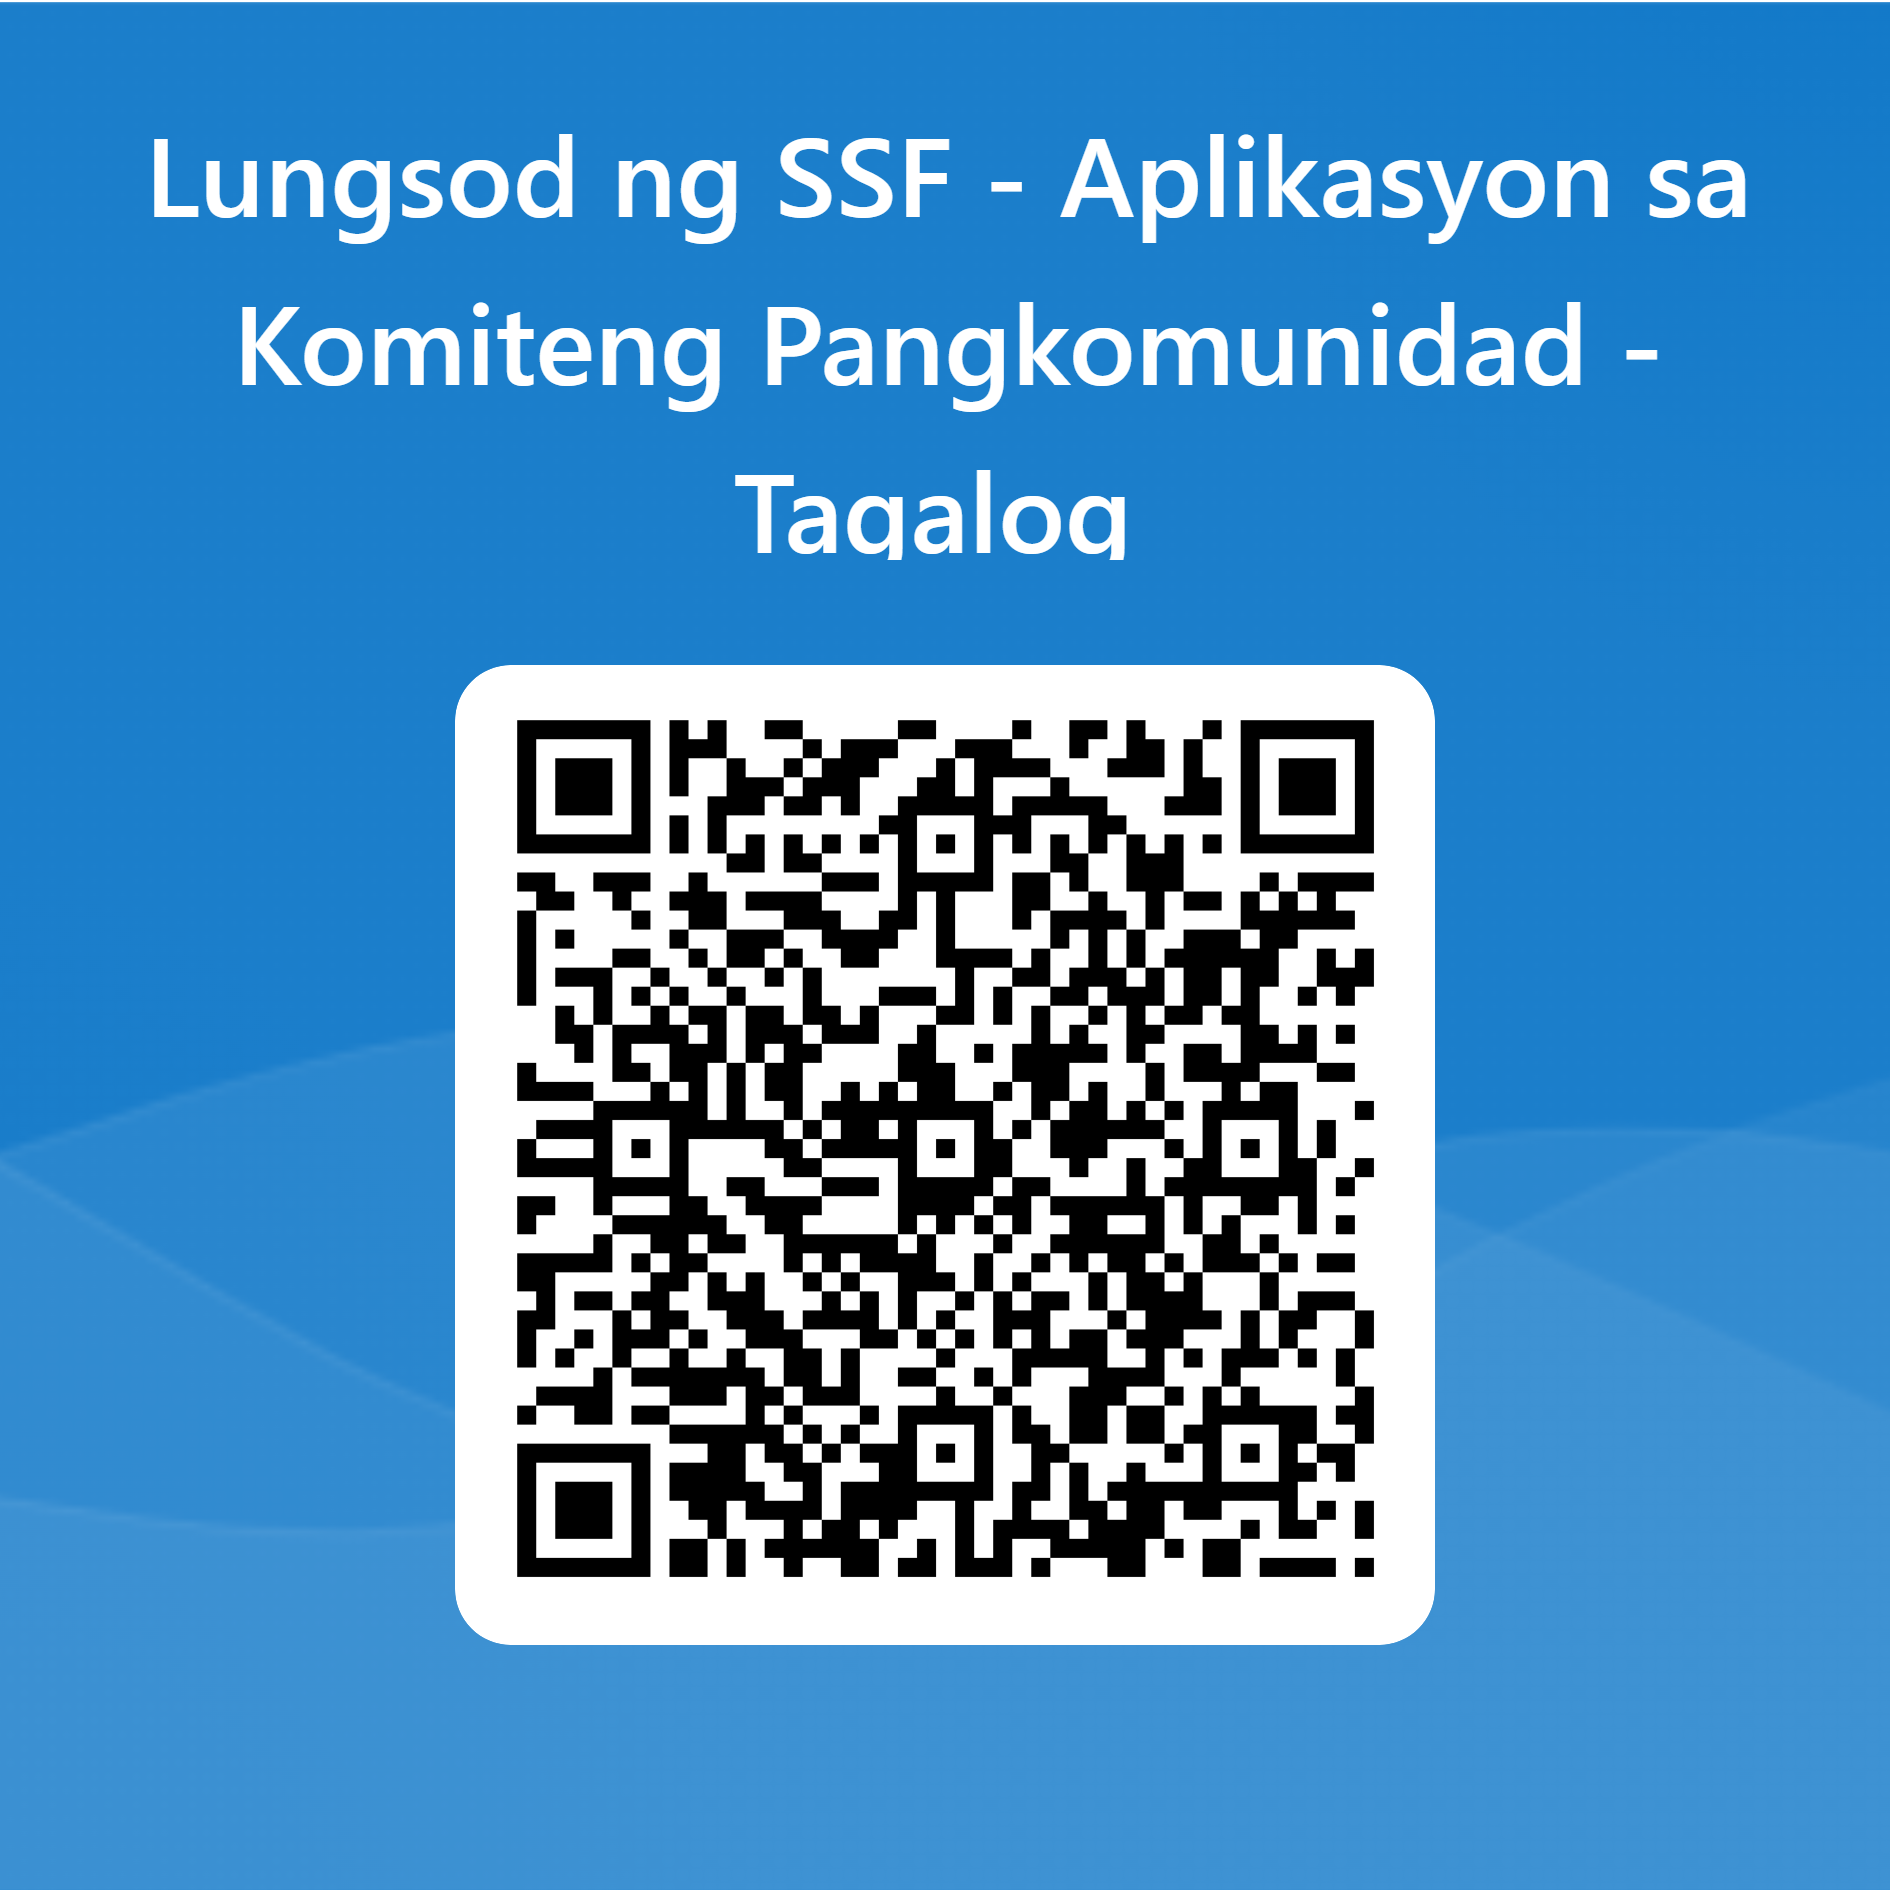 QRCode for Lungsod ng SSF - Aplikasyon sa Komiteng Pangkomunidad - Tagalog .png